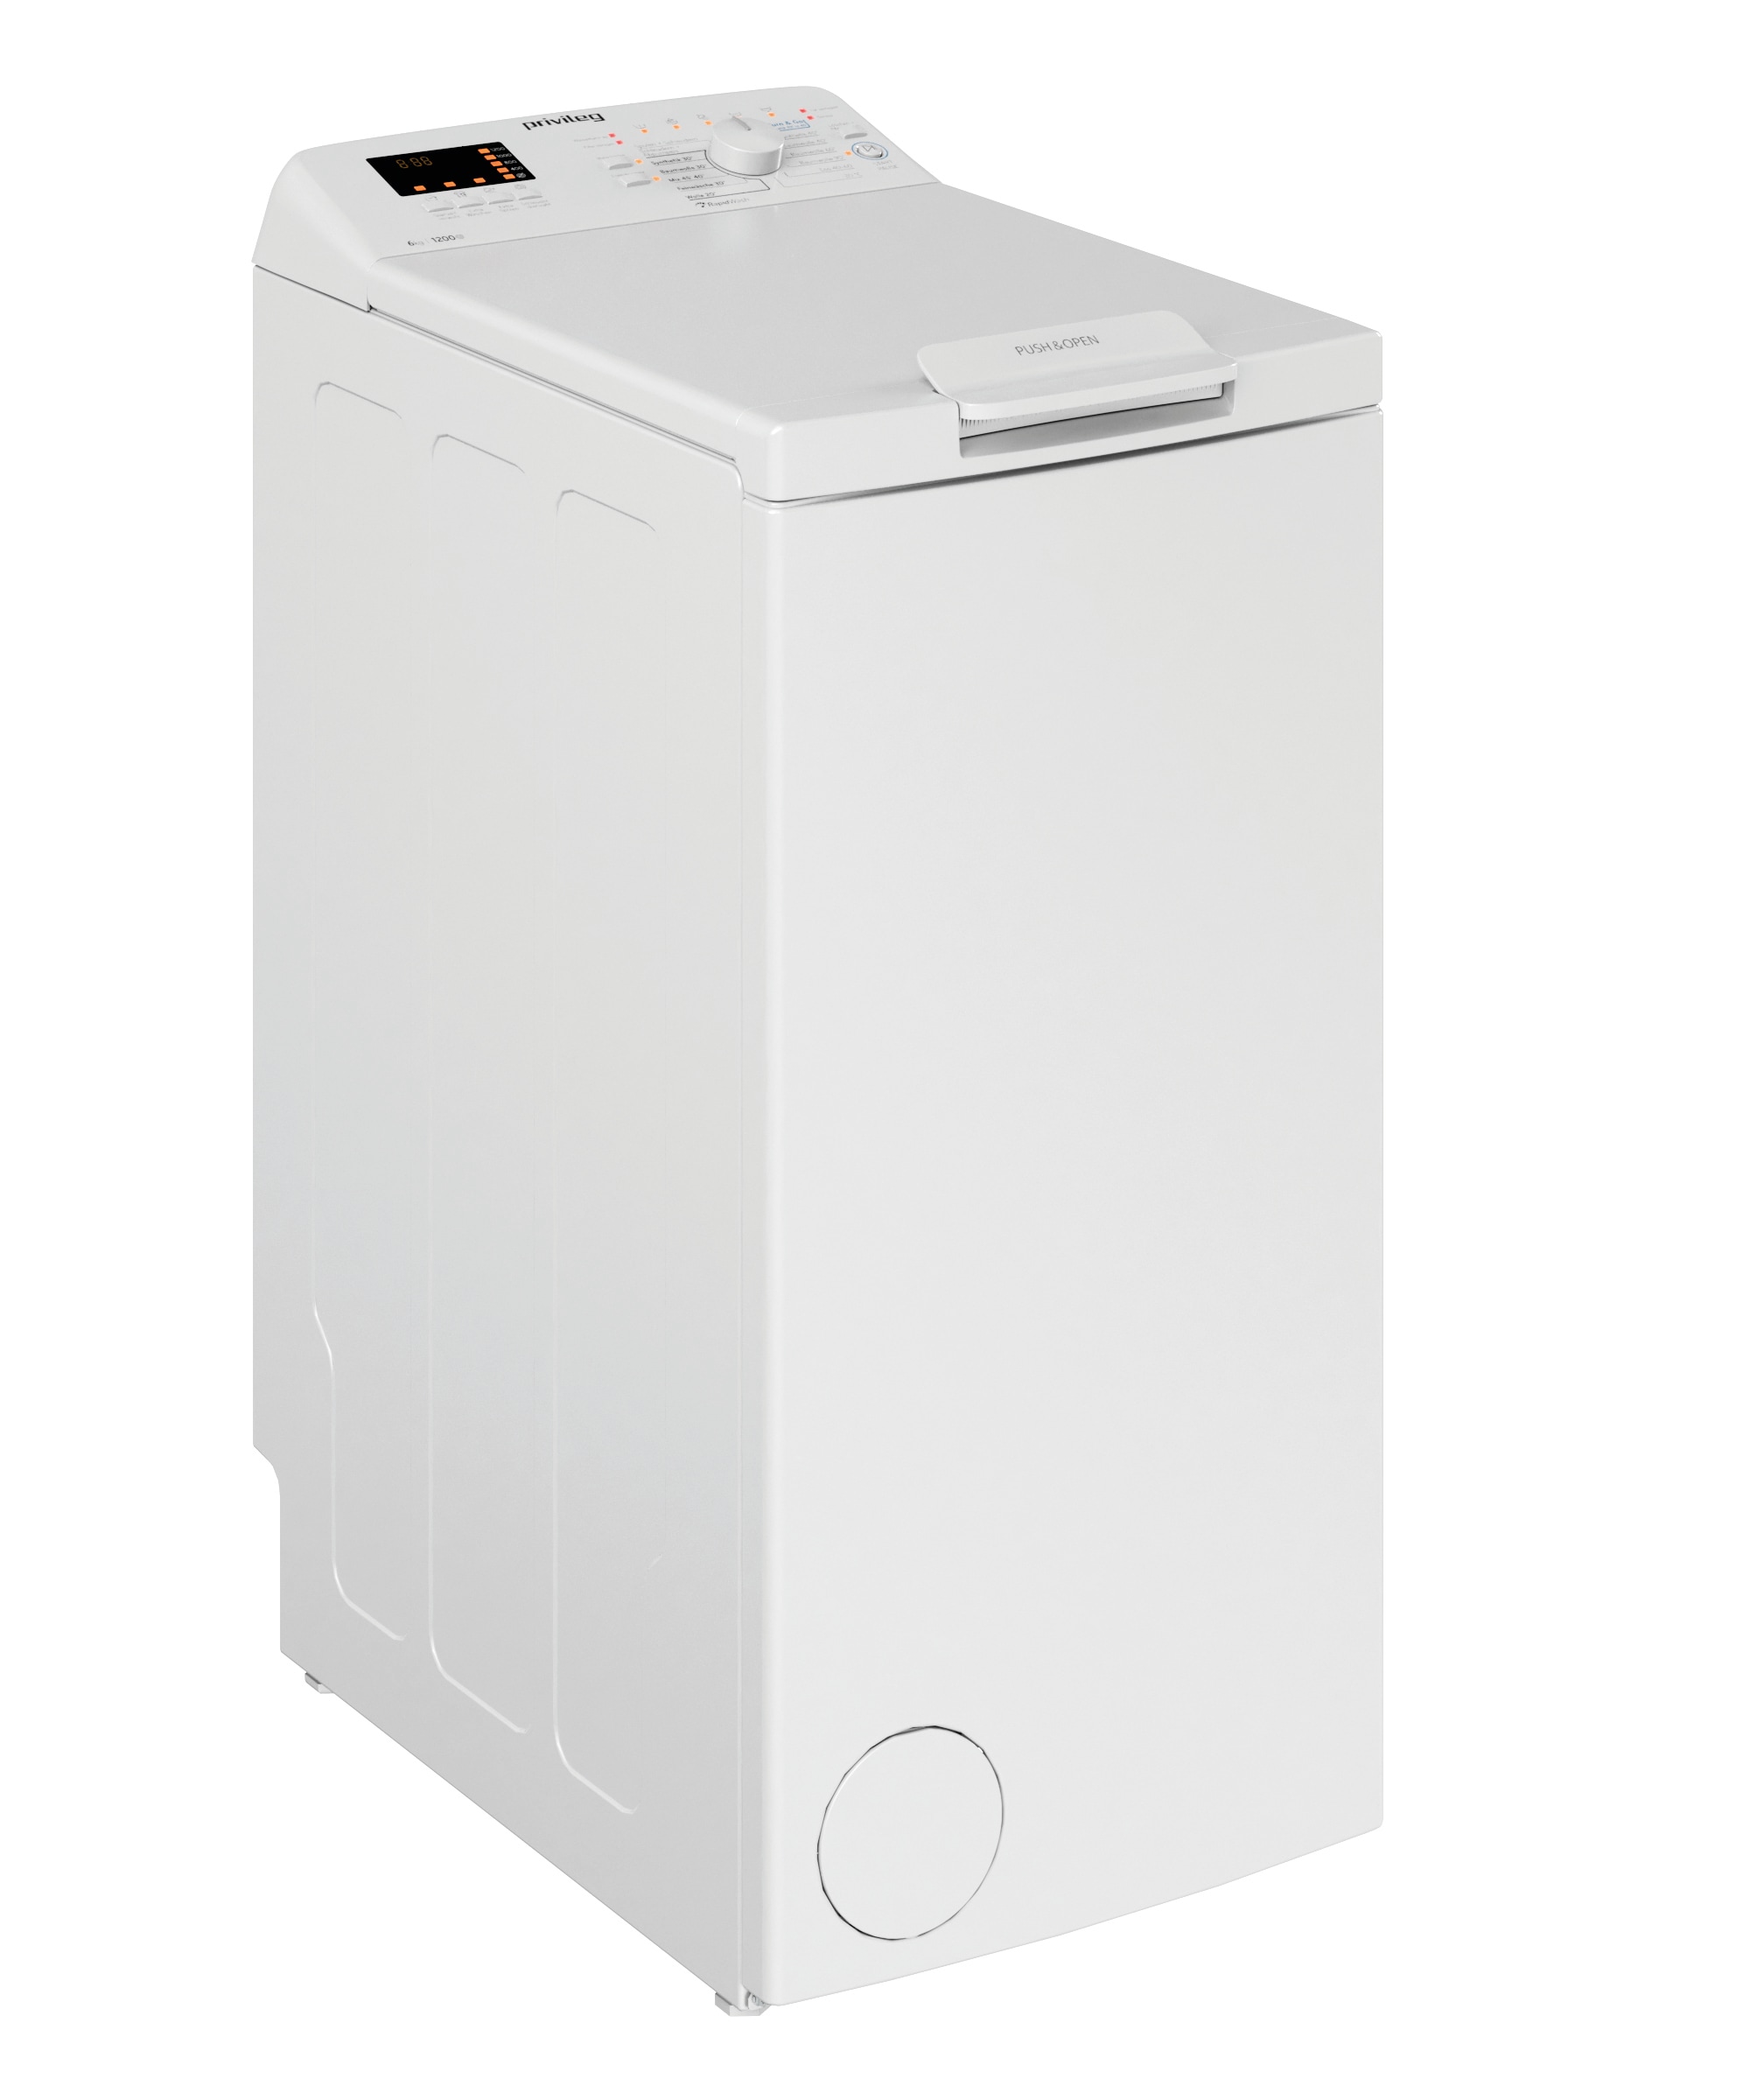 BAUKNECHT Waschmaschine Toplader »WMT 6513 CC«, WMT 6513 CC, 6,5 kg, 1200 U/ min, 4 Jahre Herstellergarantie online bei